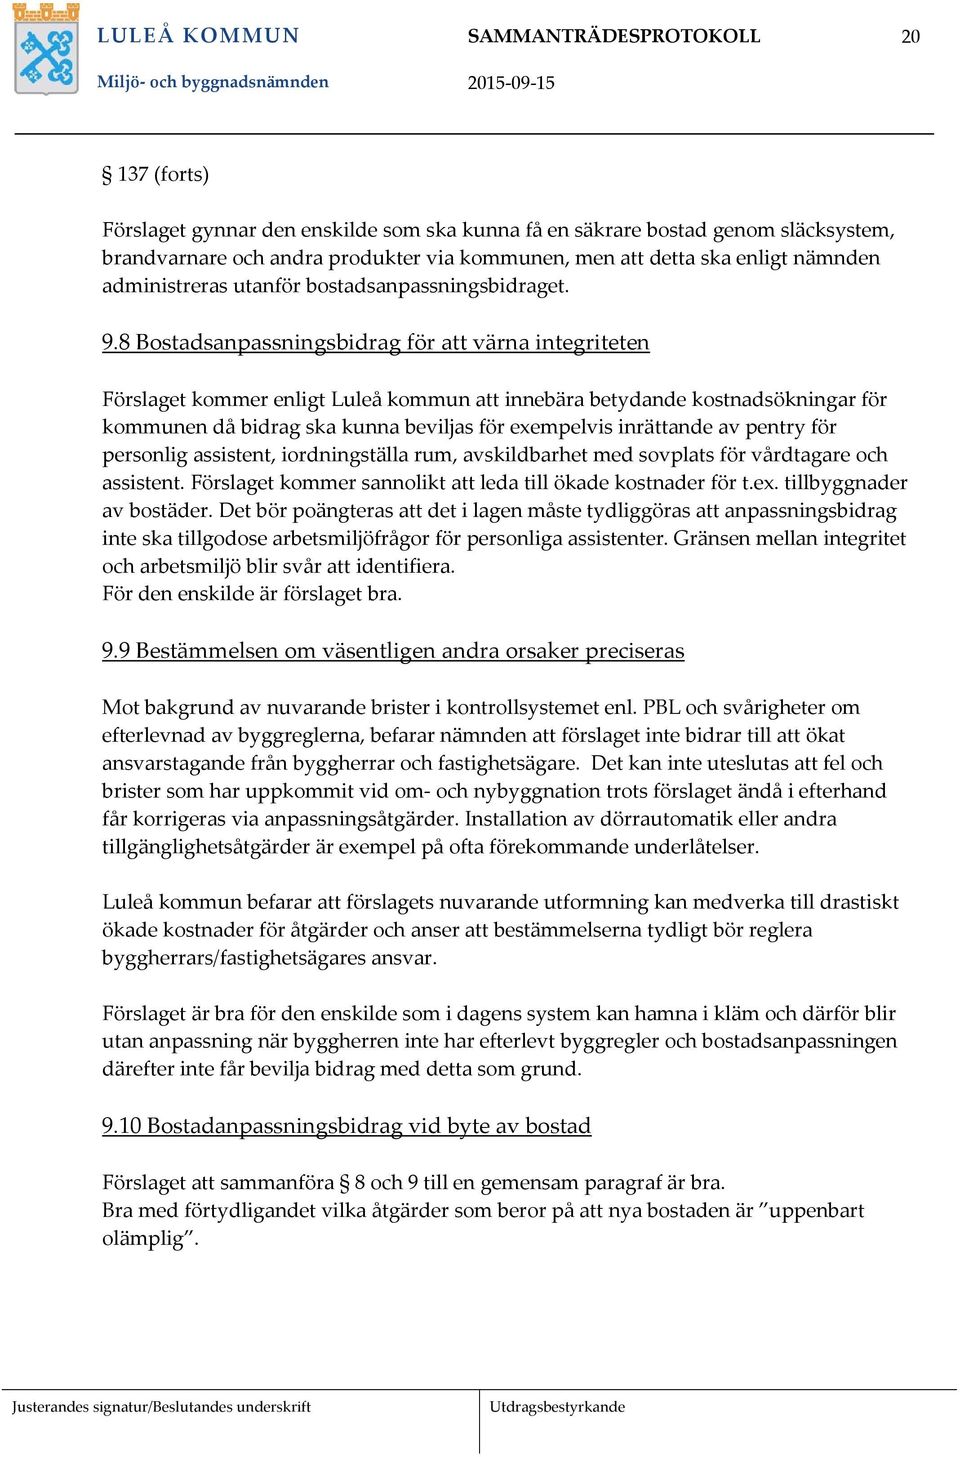 8 Bostadsanpassningsbidrag för att värna integriteten Förslaget kommer enligt Luleå kommun att innebära betydande kostnadsökningar för kommunen då bidrag ska kunna beviljas för exempelvis inrättande